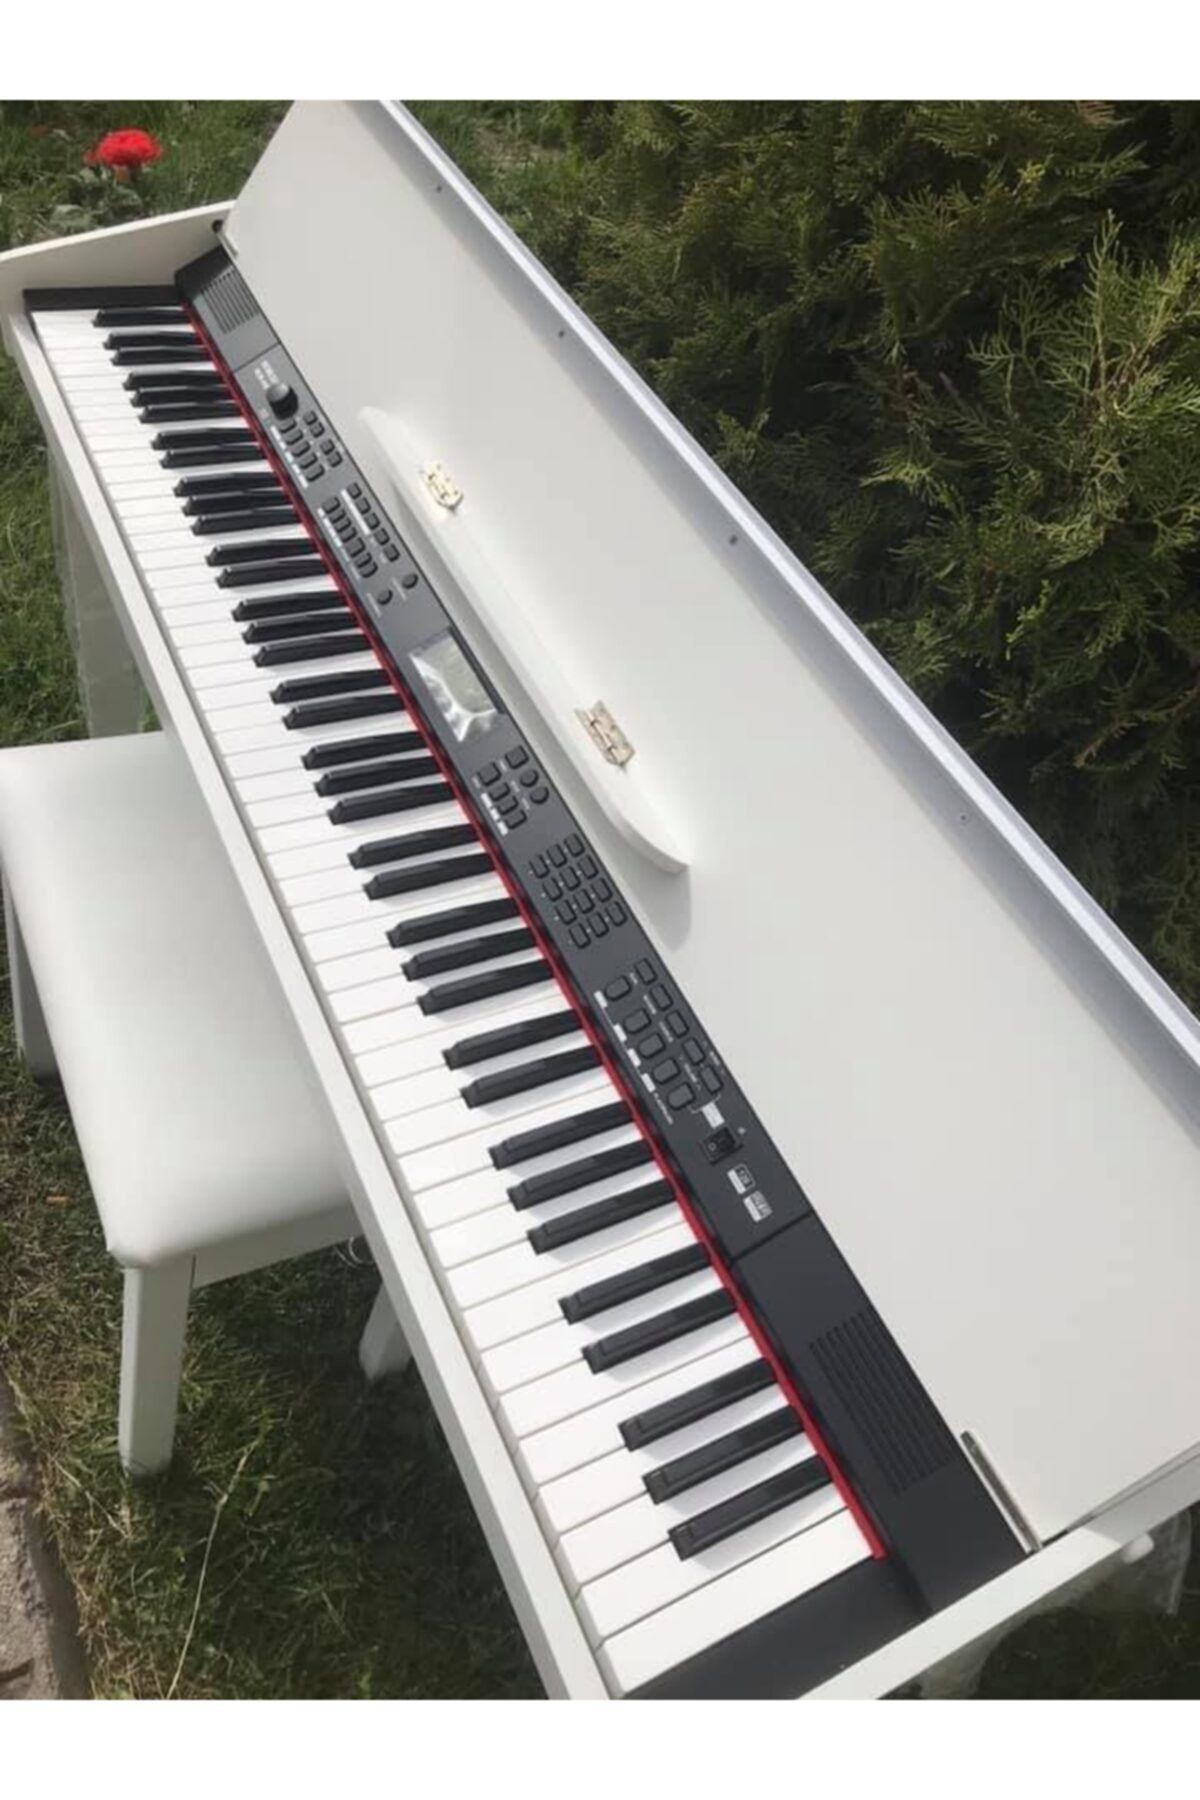 Nemesis Nem-969 Beyaz Renk 88 Tuş Dijital Piyano